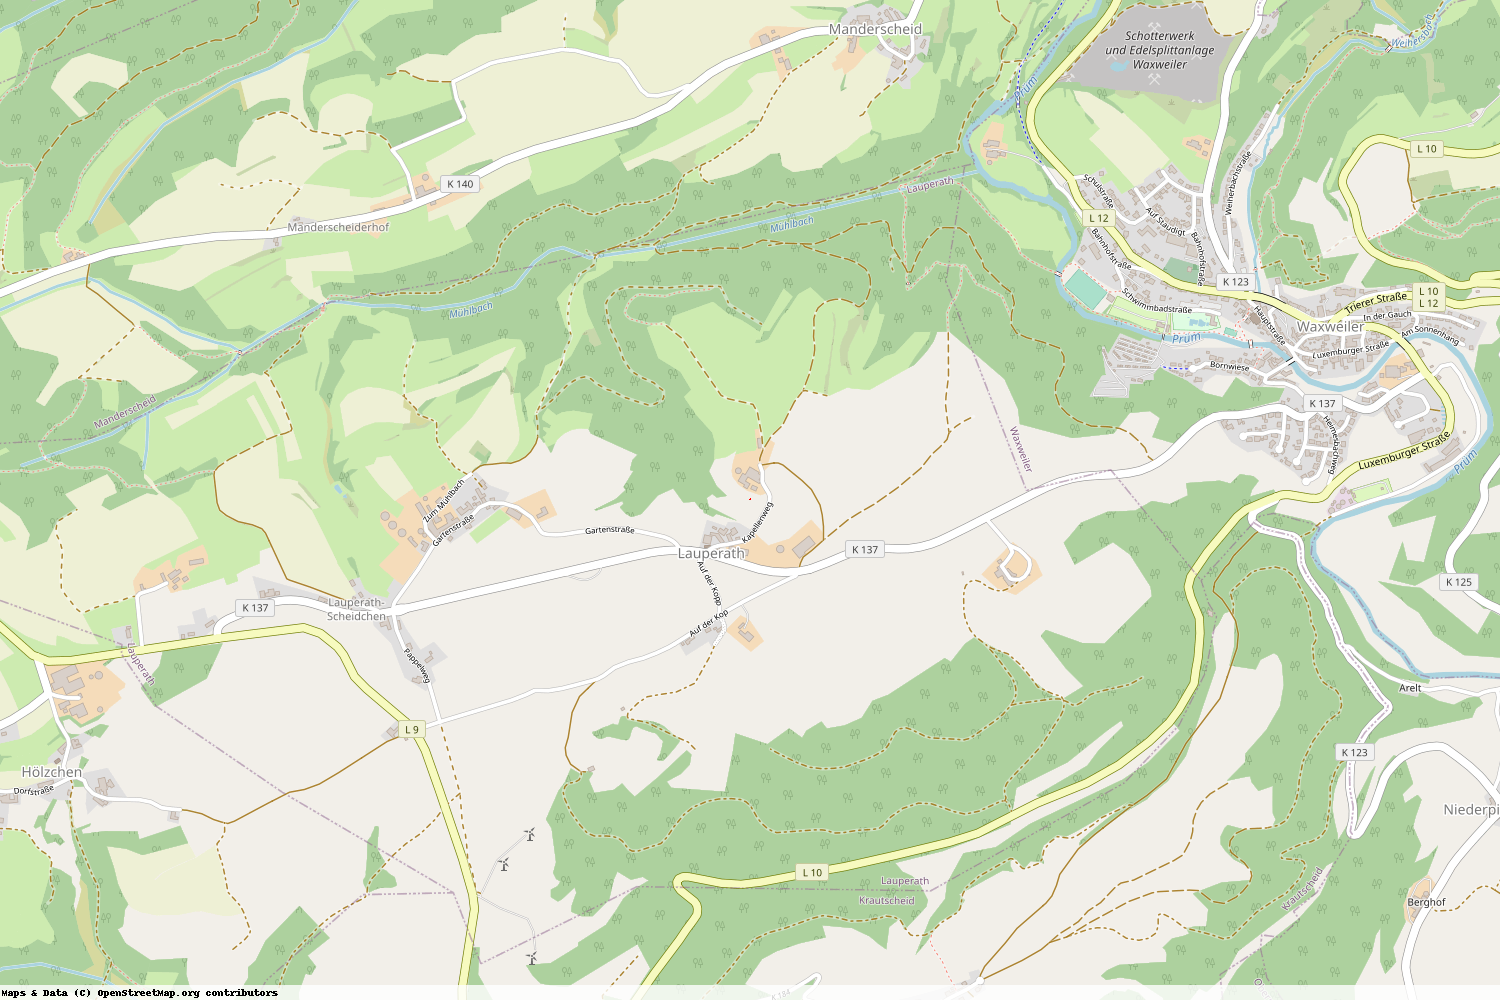 Ist gerade Stromausfall in Rheinland-Pfalz - Eifelkreis Bitburg-Prüm - Lauperath?